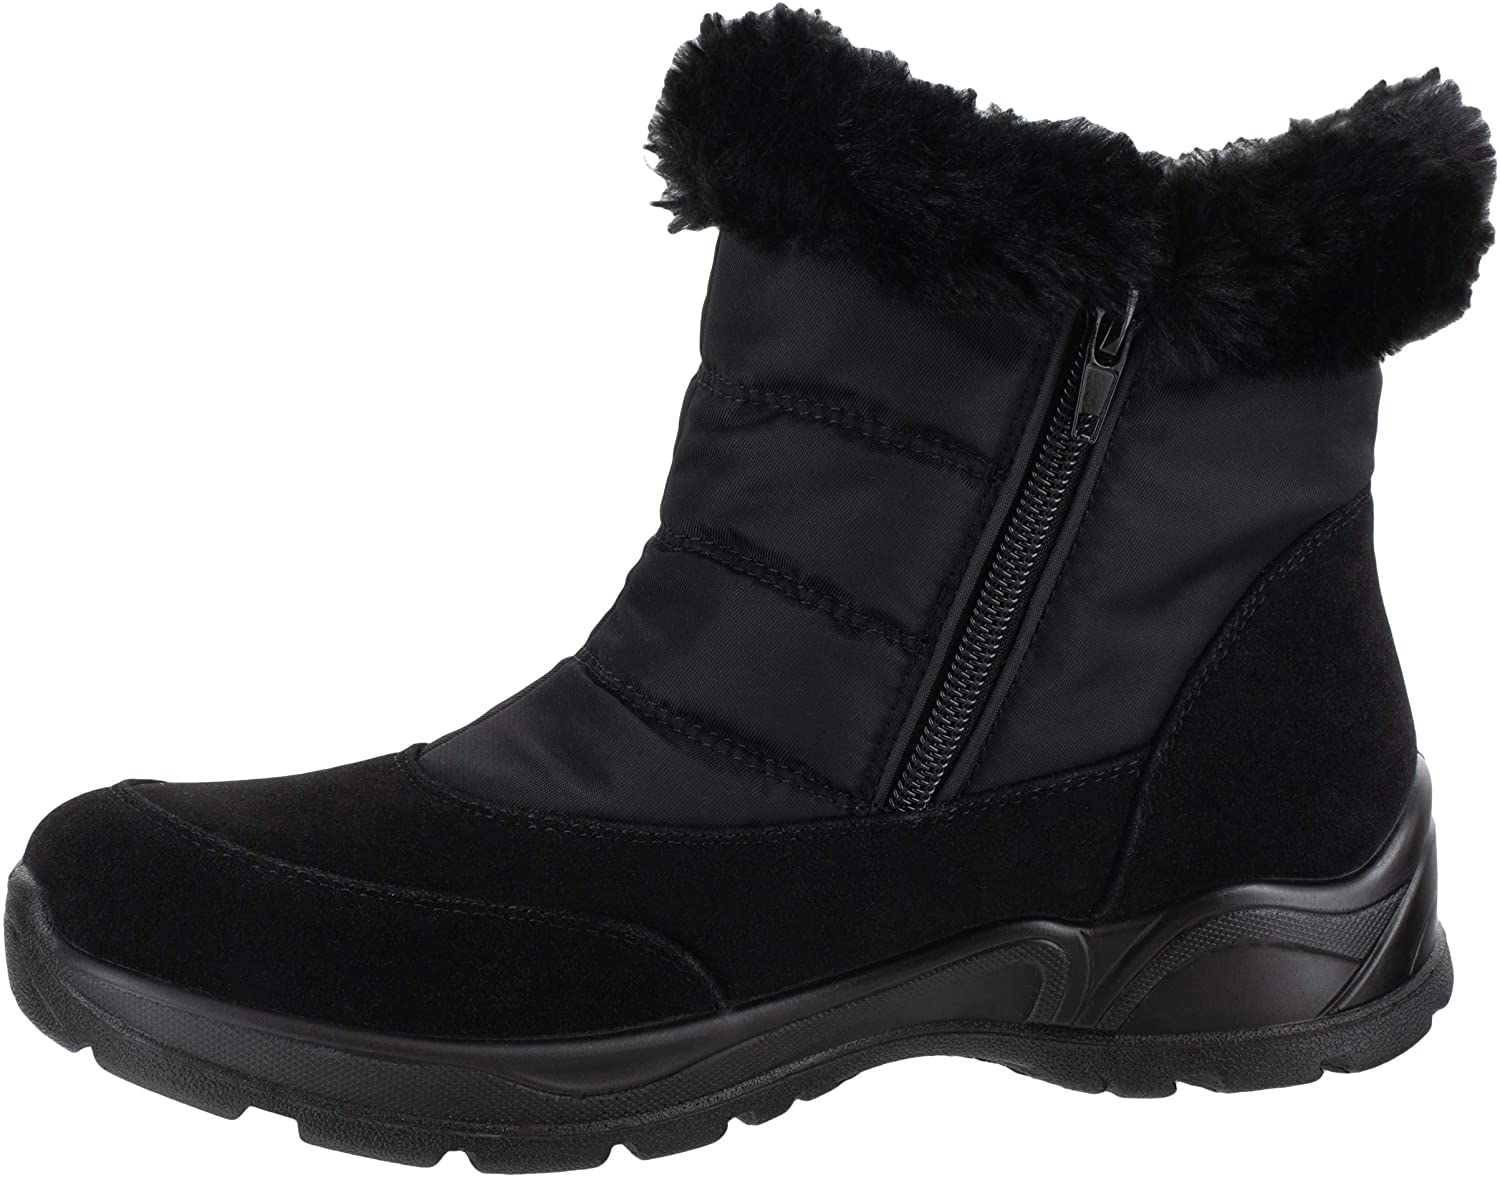 Easy Street Women's Frosty Boot, Black, Size 5.5 193073277681 | eBay